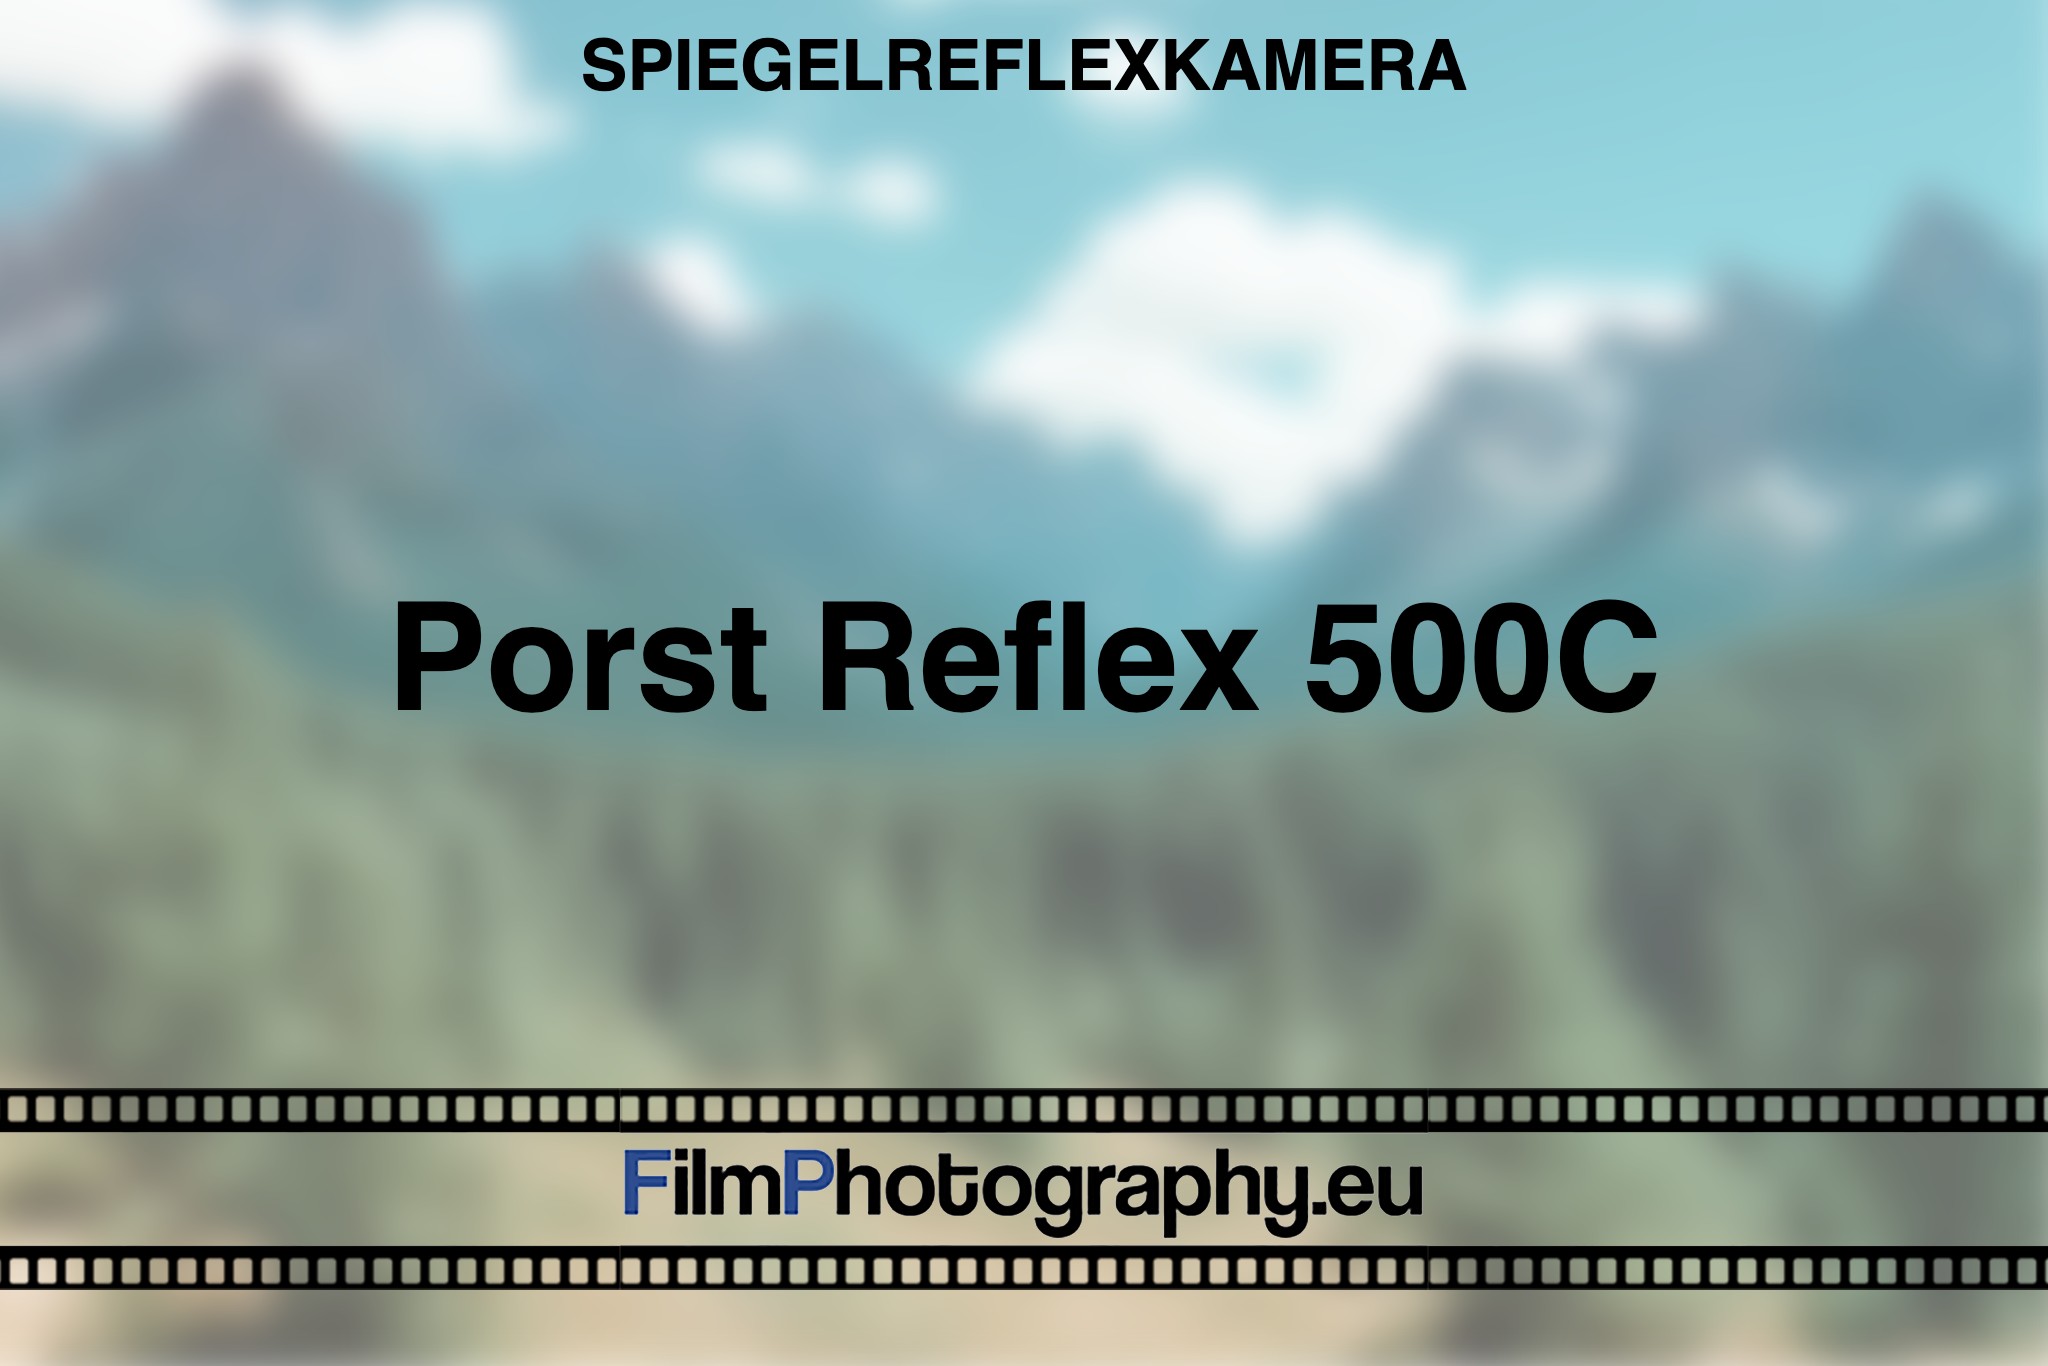 porst-reflex-500c-spiegelreflexkamera-bnv